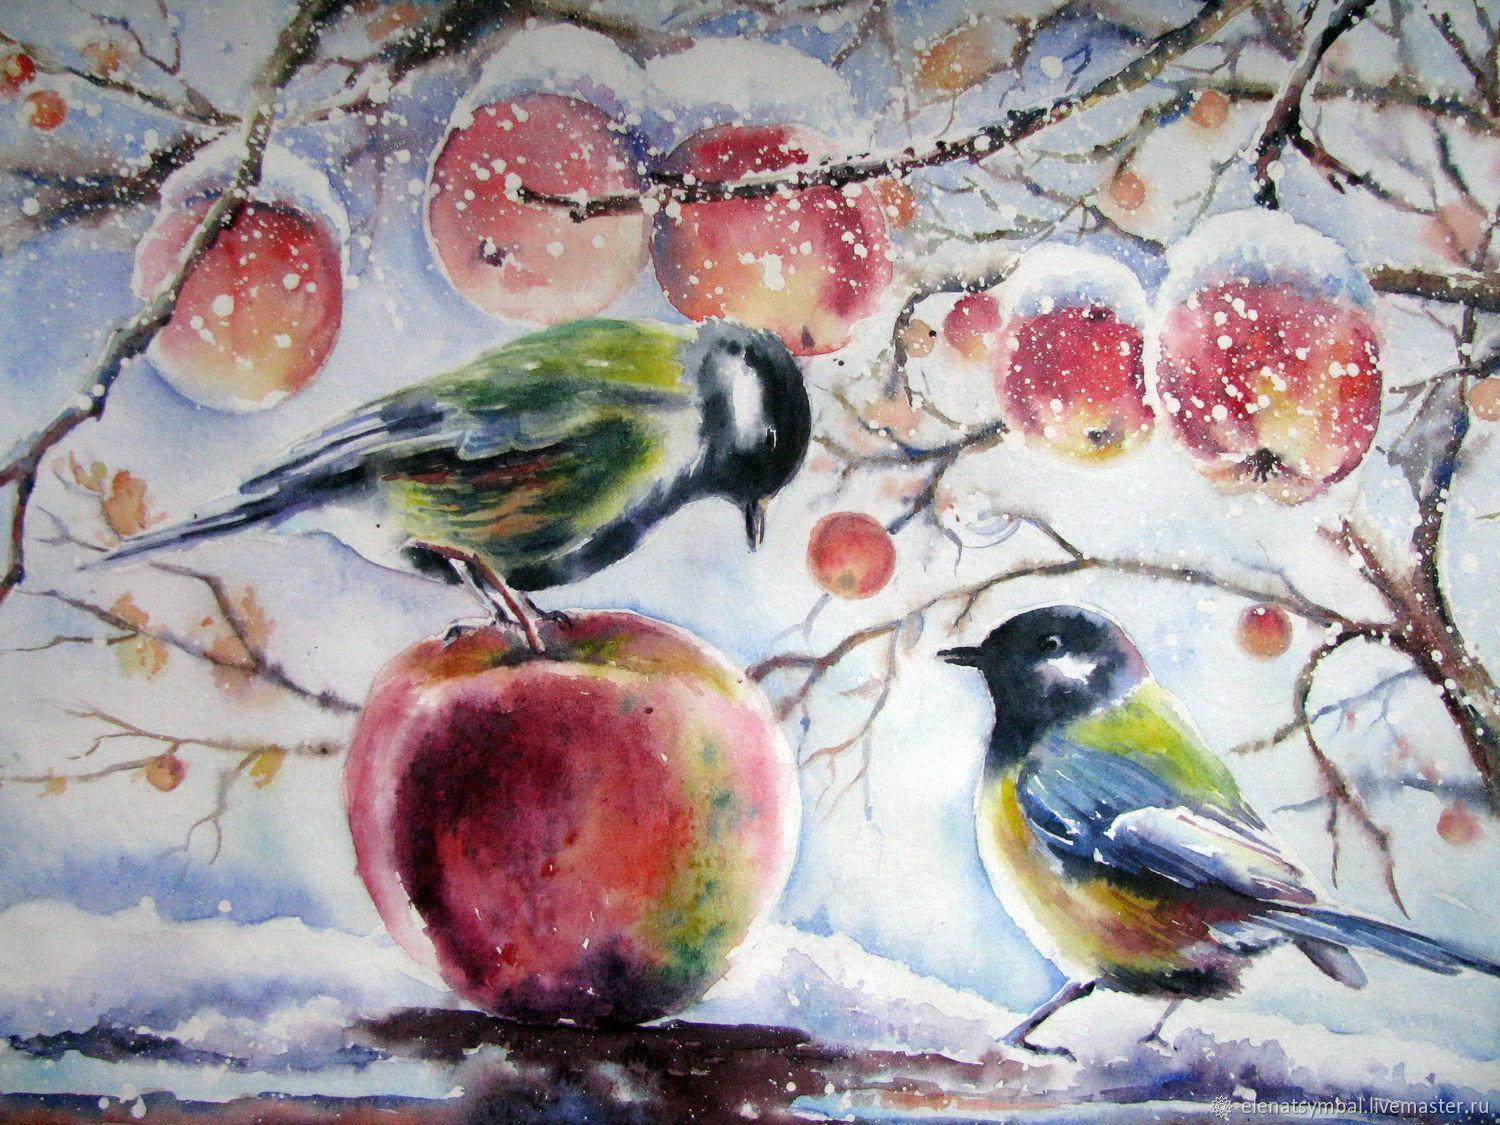 Обои на телефон: Зима, Птицы, Снег, Животные, 16837 скачать картинку  бесплатно.